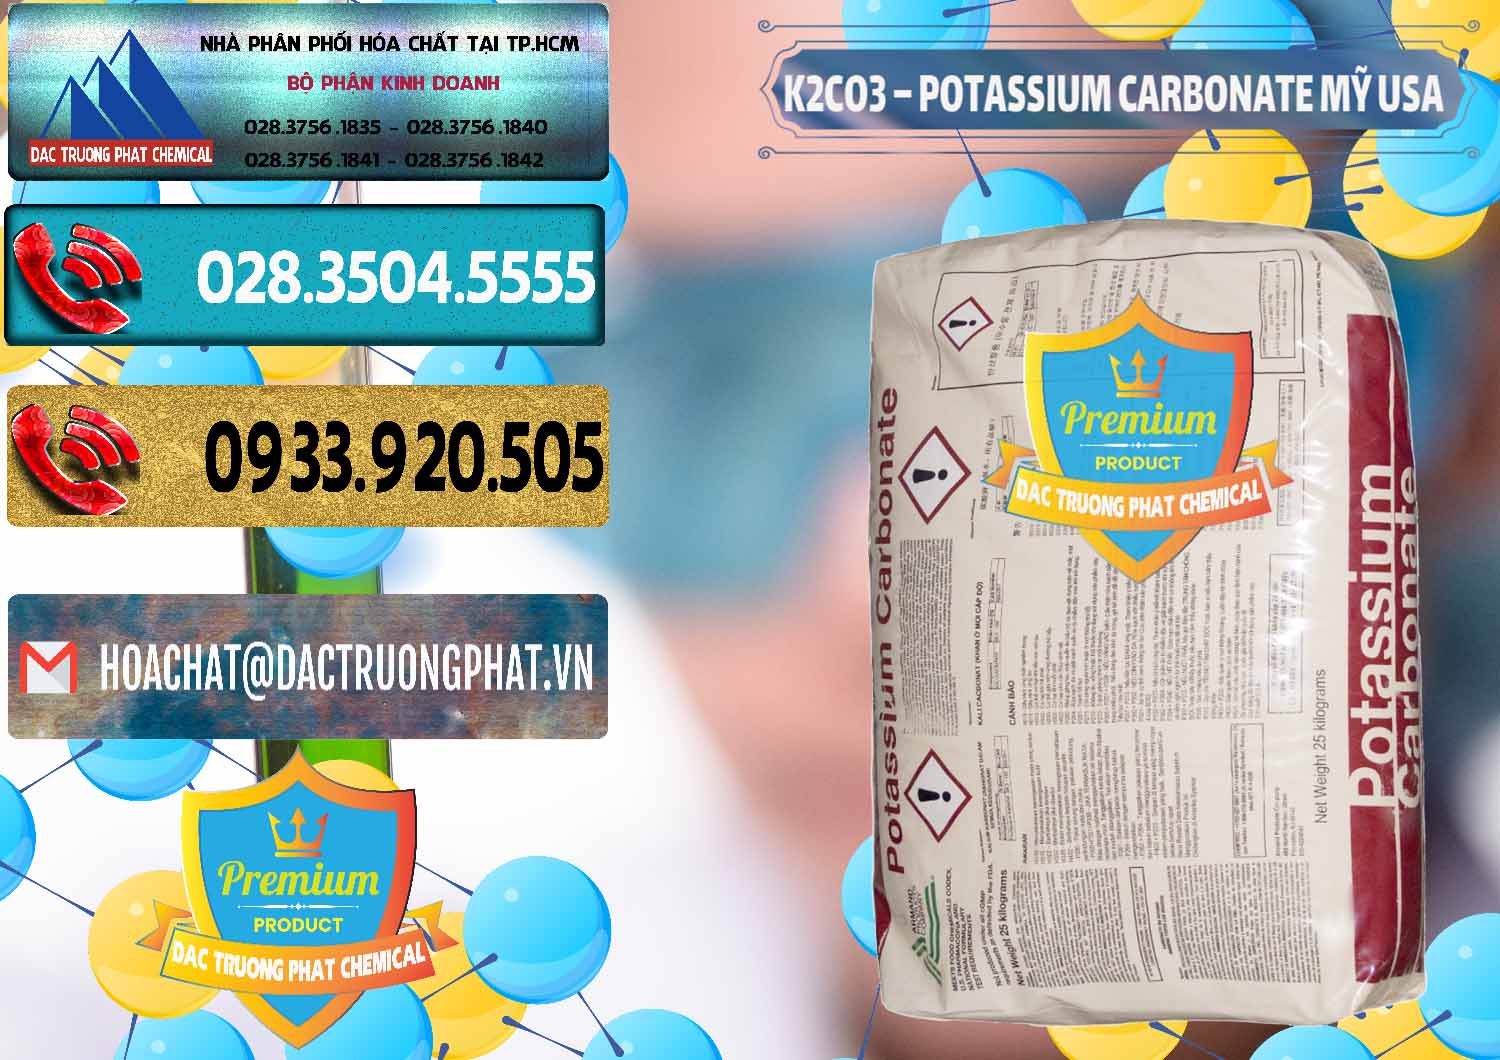 Chuyên kinh doanh _ bán K2Co3 – Potassium Carbonate Mỹ USA - 0082 - Nơi chuyên cung cấp - nhập khẩu hóa chất tại TP.HCM - hoachatdetnhuom.com